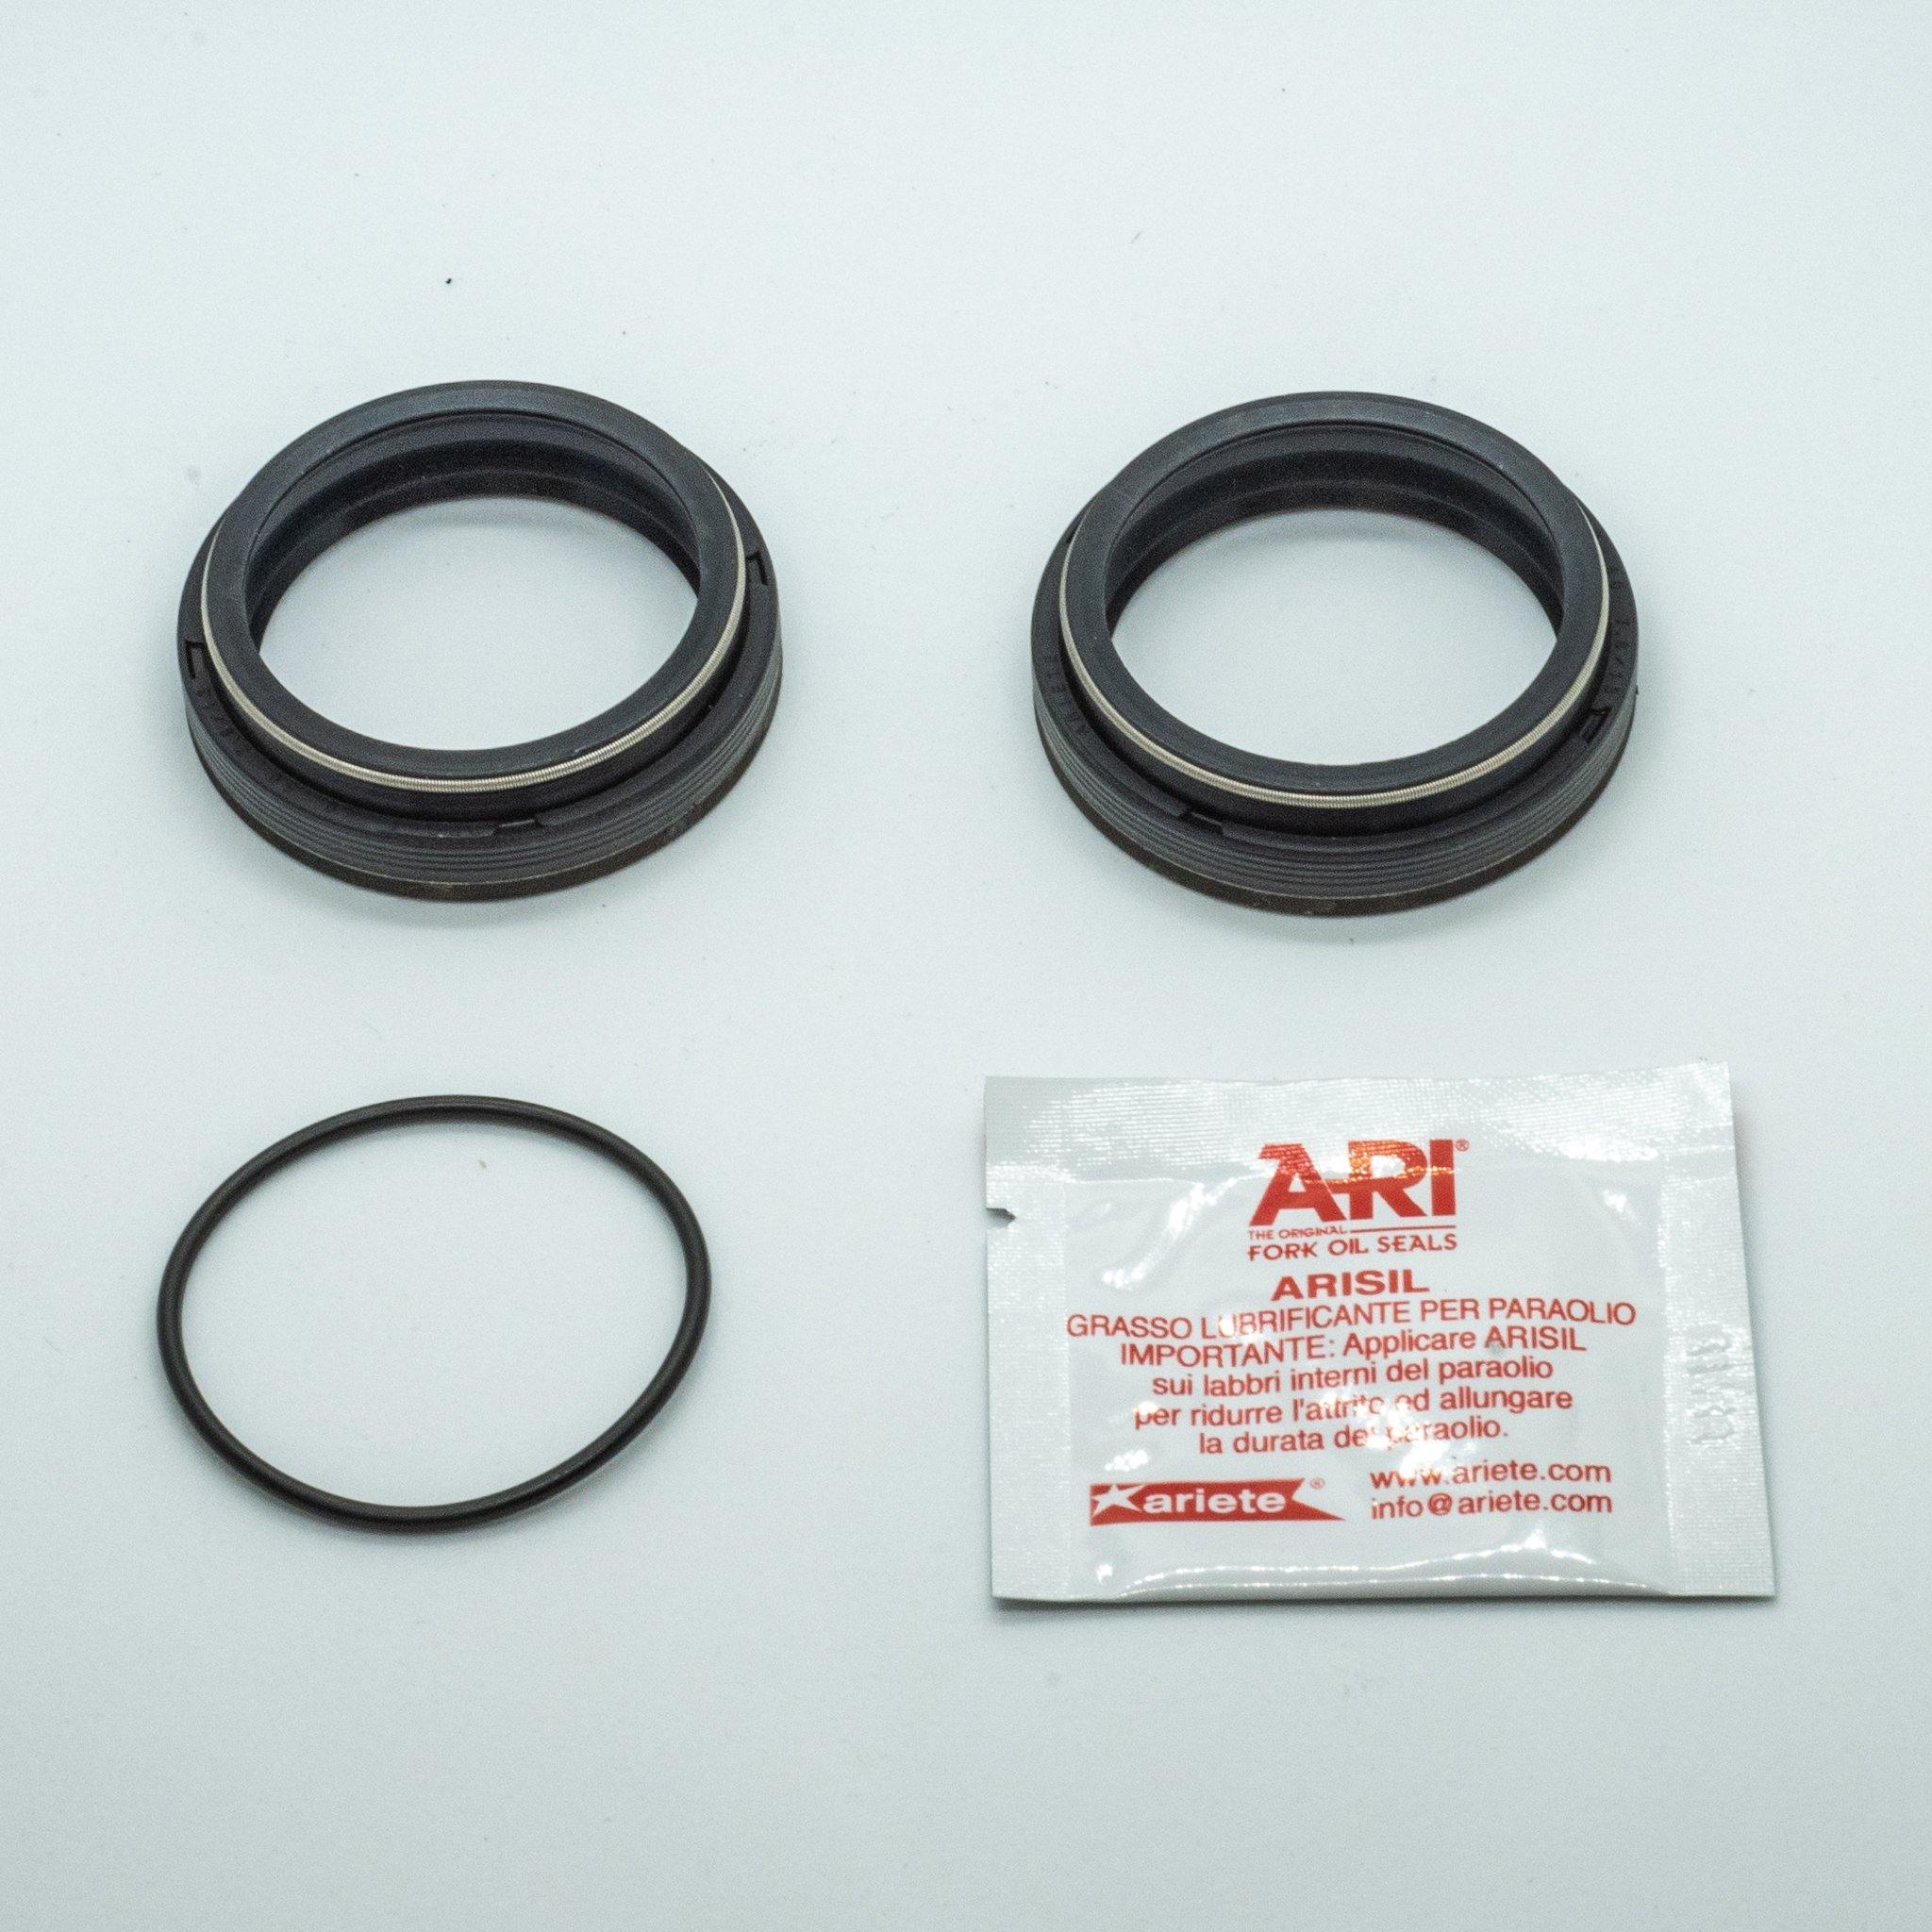 ARI Fork Oil Seals - 35 Diameter - GAMUX